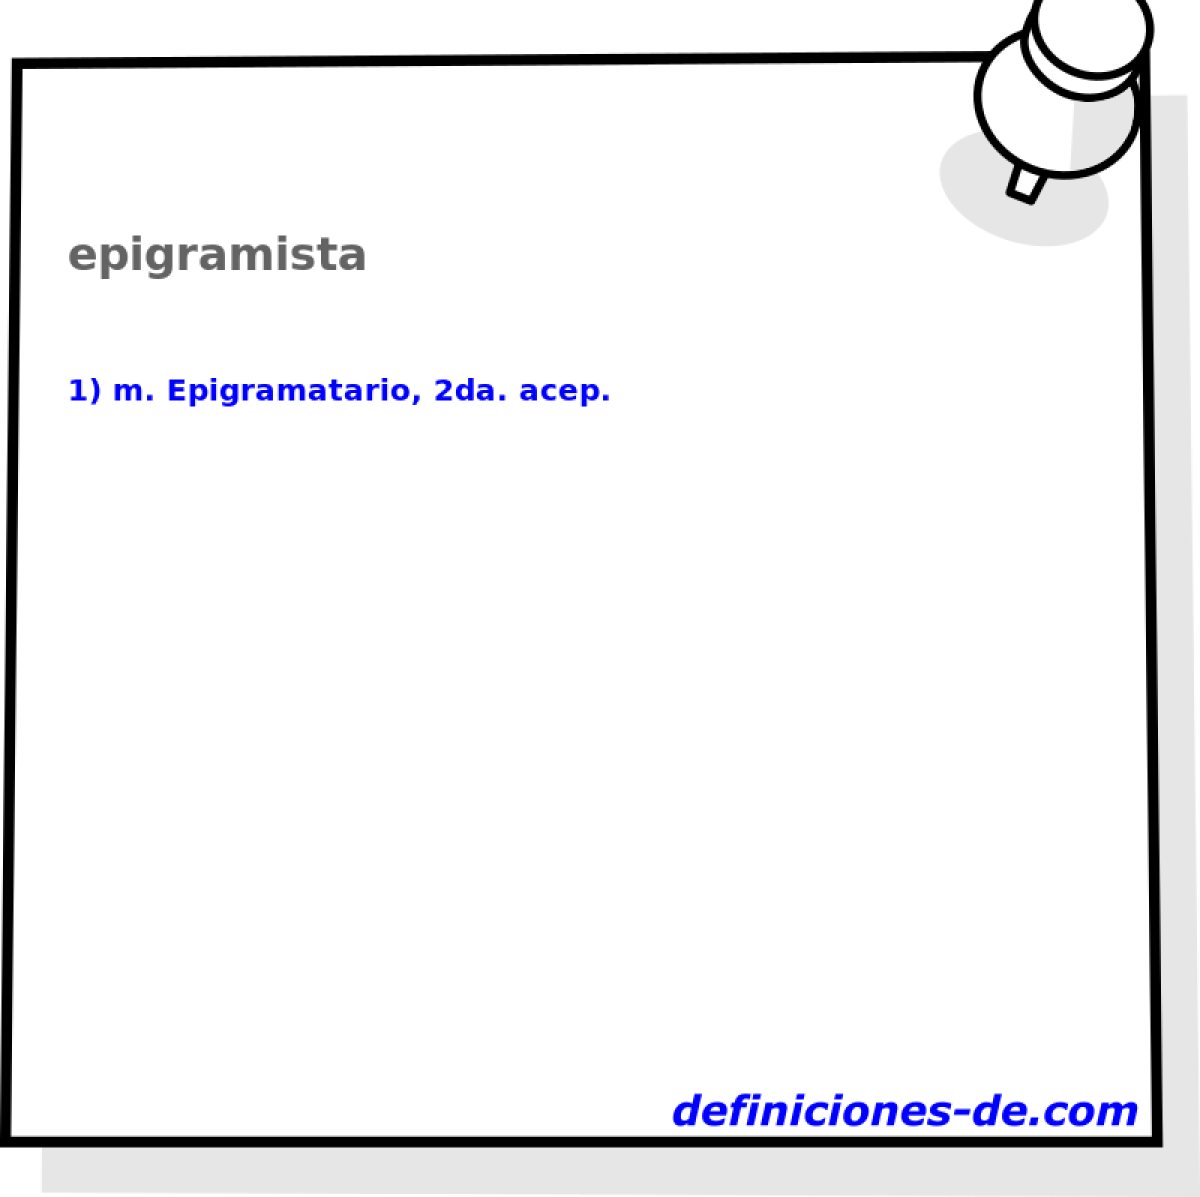 epigramista 